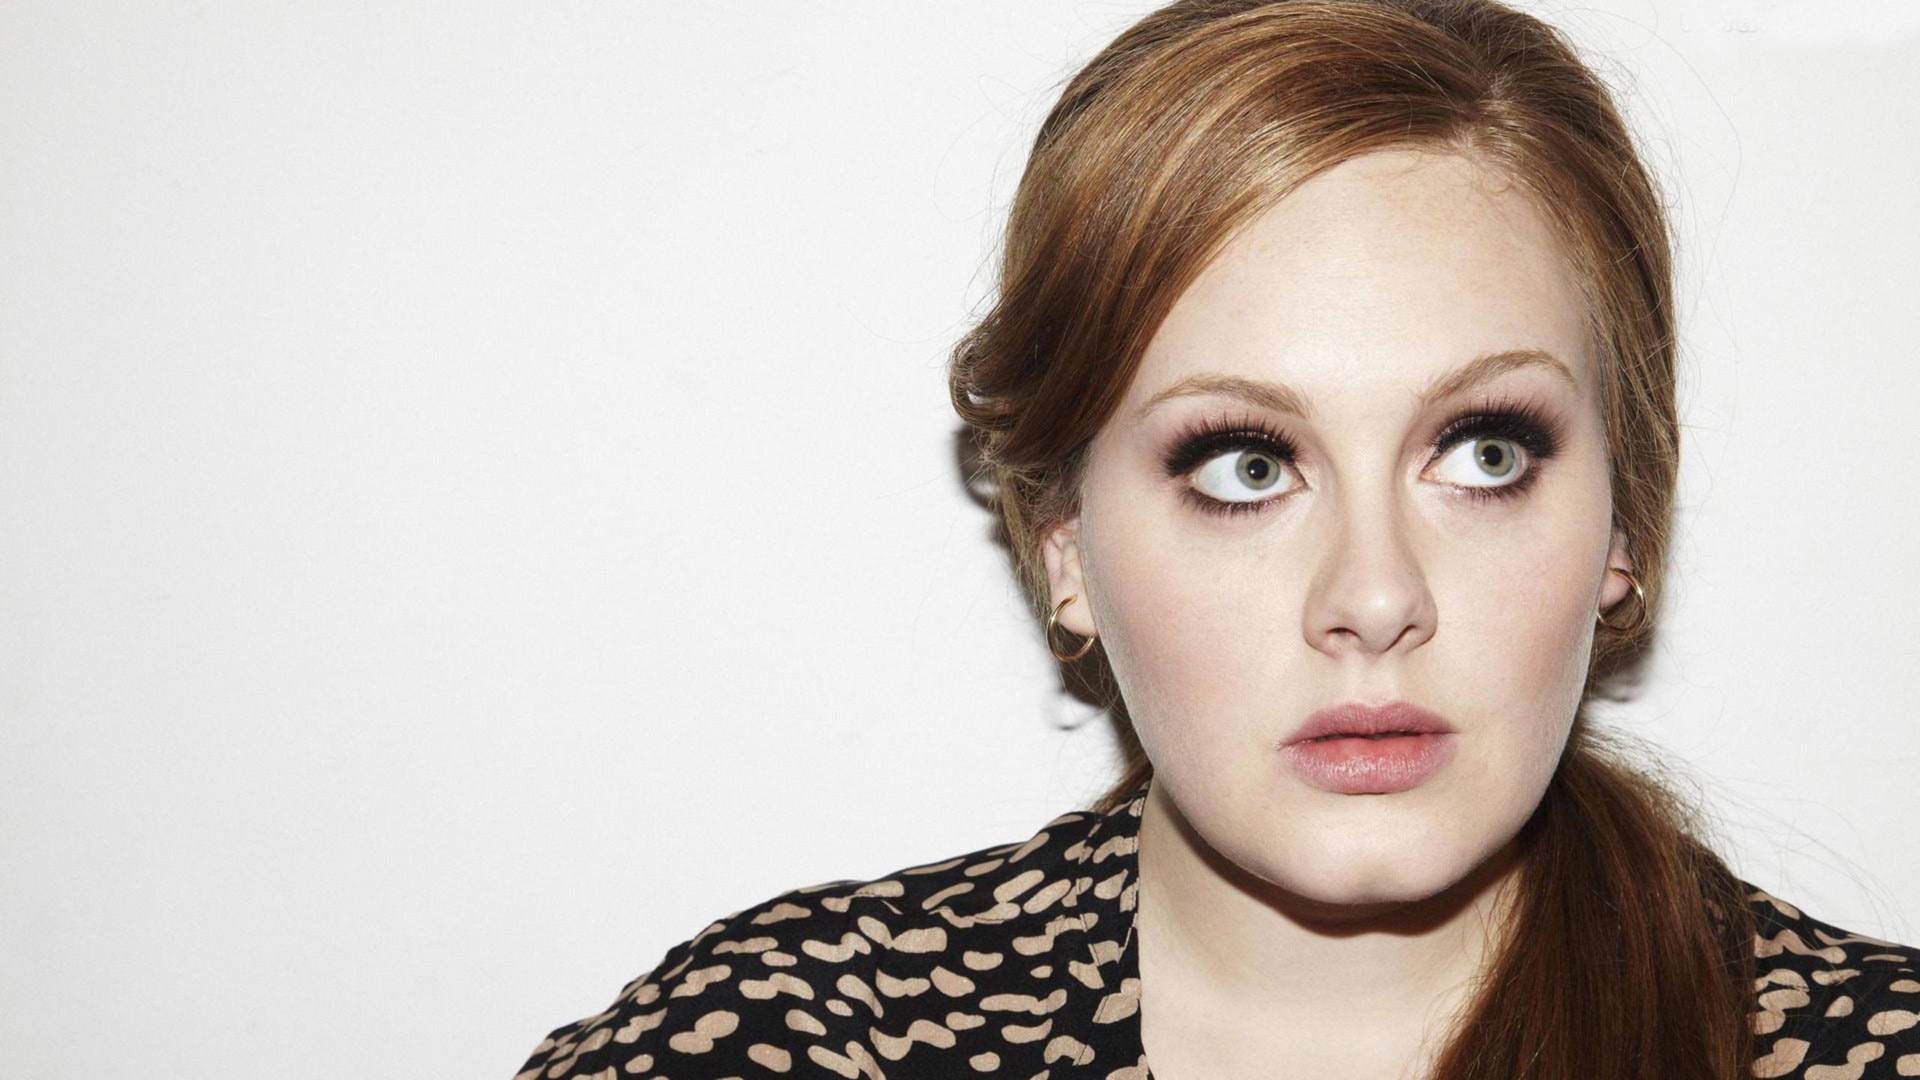 Grammy Awardee Singer Adele